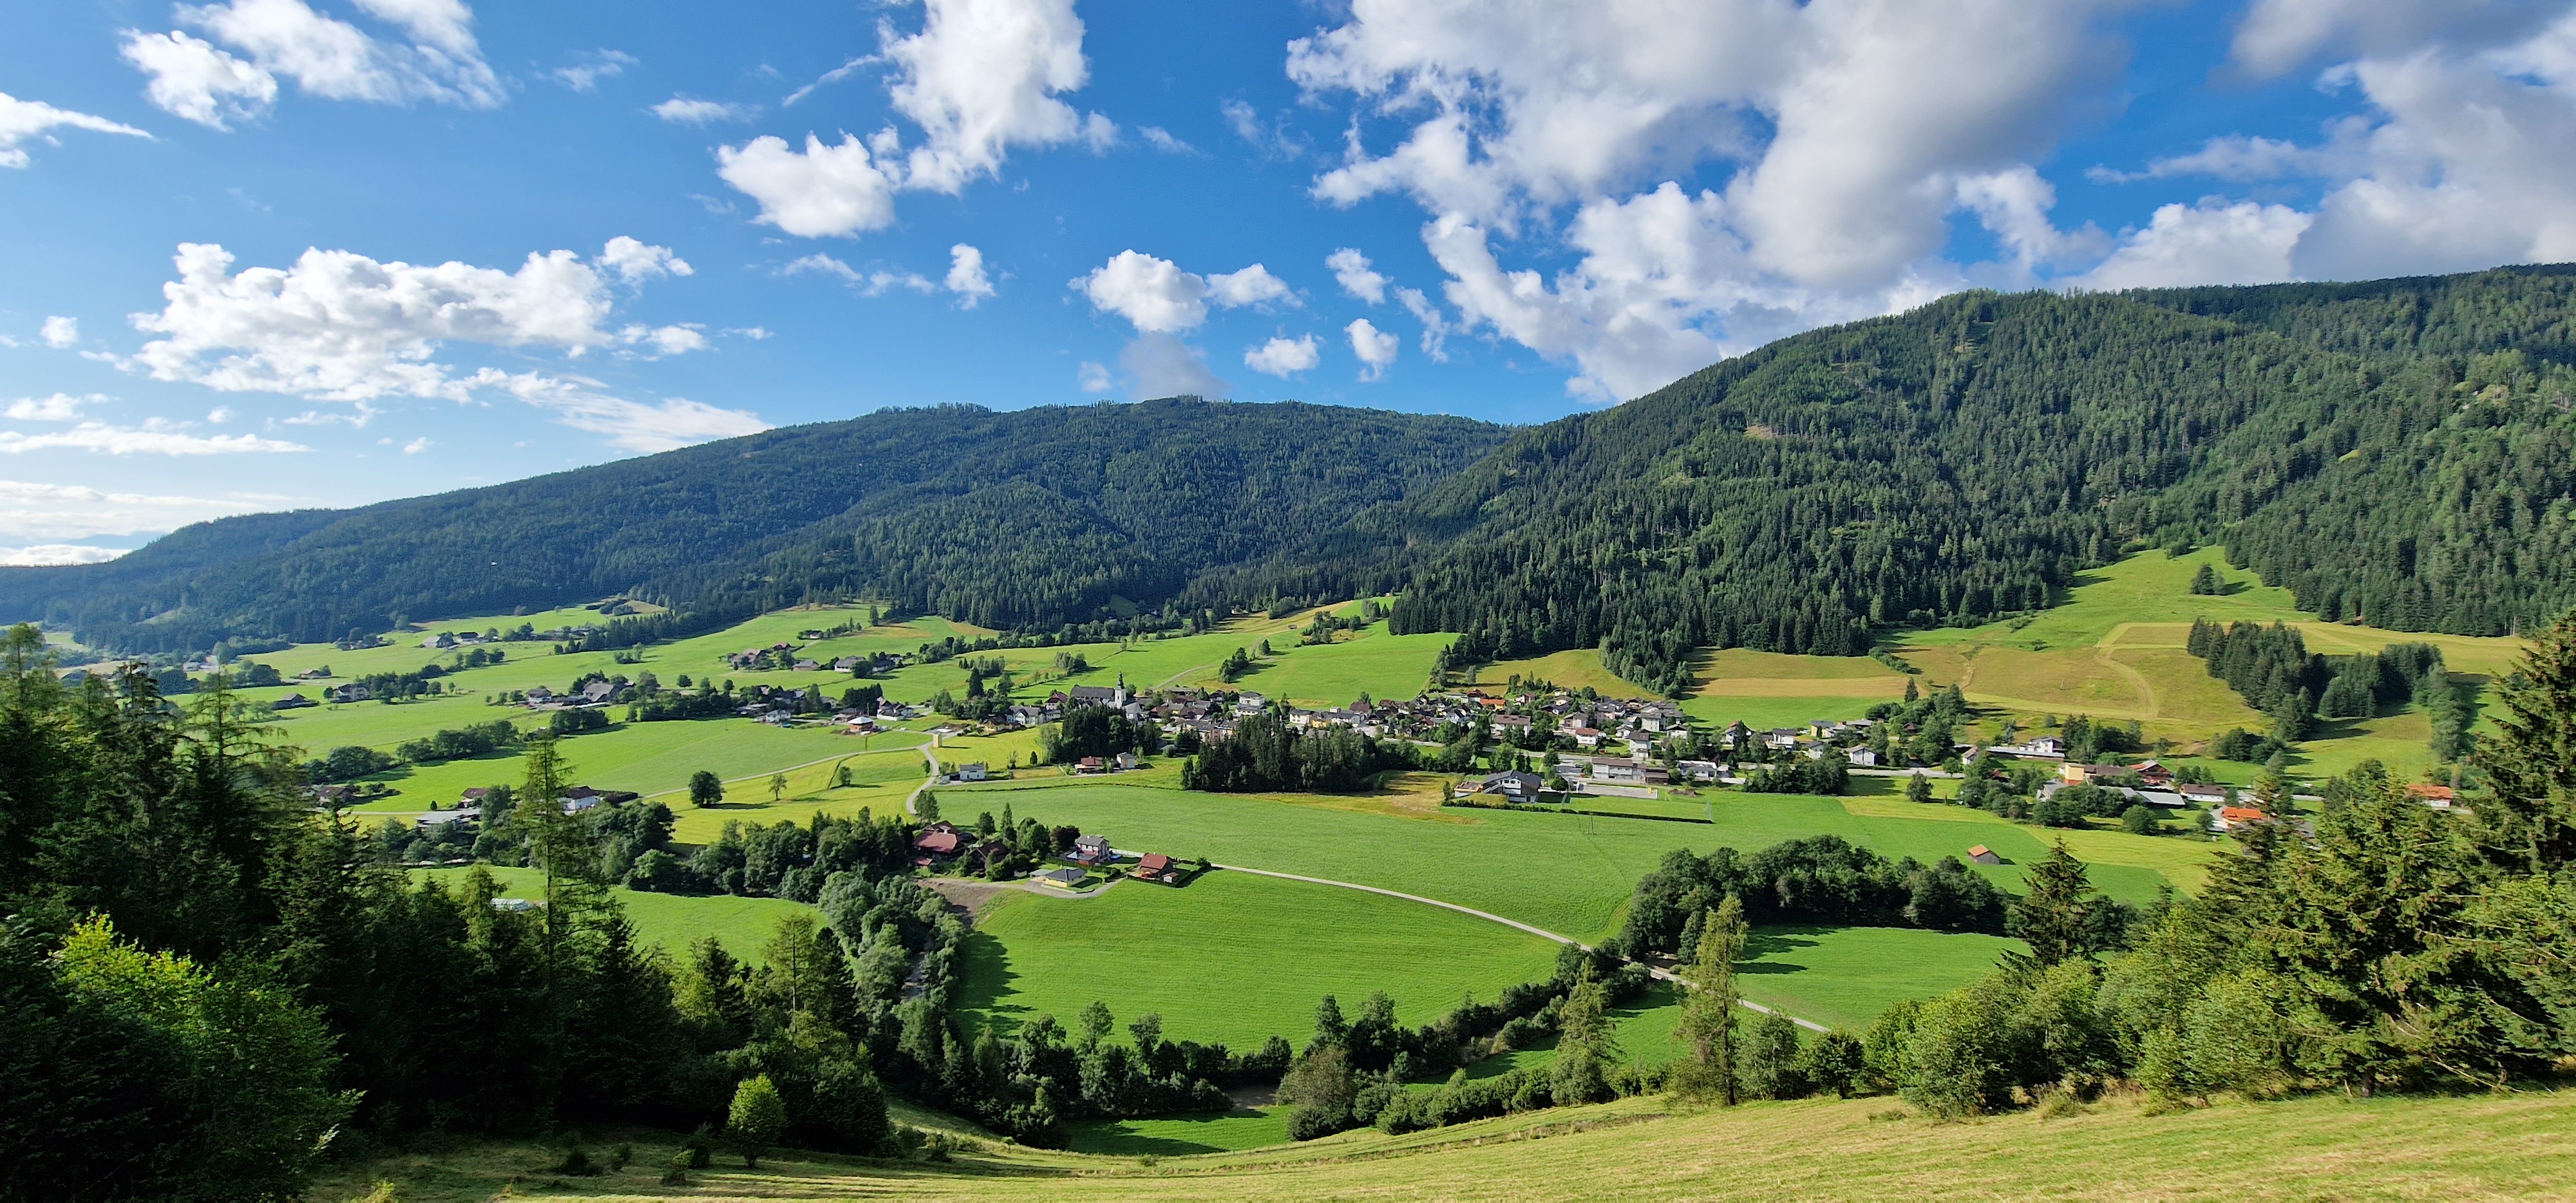 Nieuwe luxe chalet in Karinthië, Oostenrijk – Hele jaar beschikbaar ook voor skivakantie #1